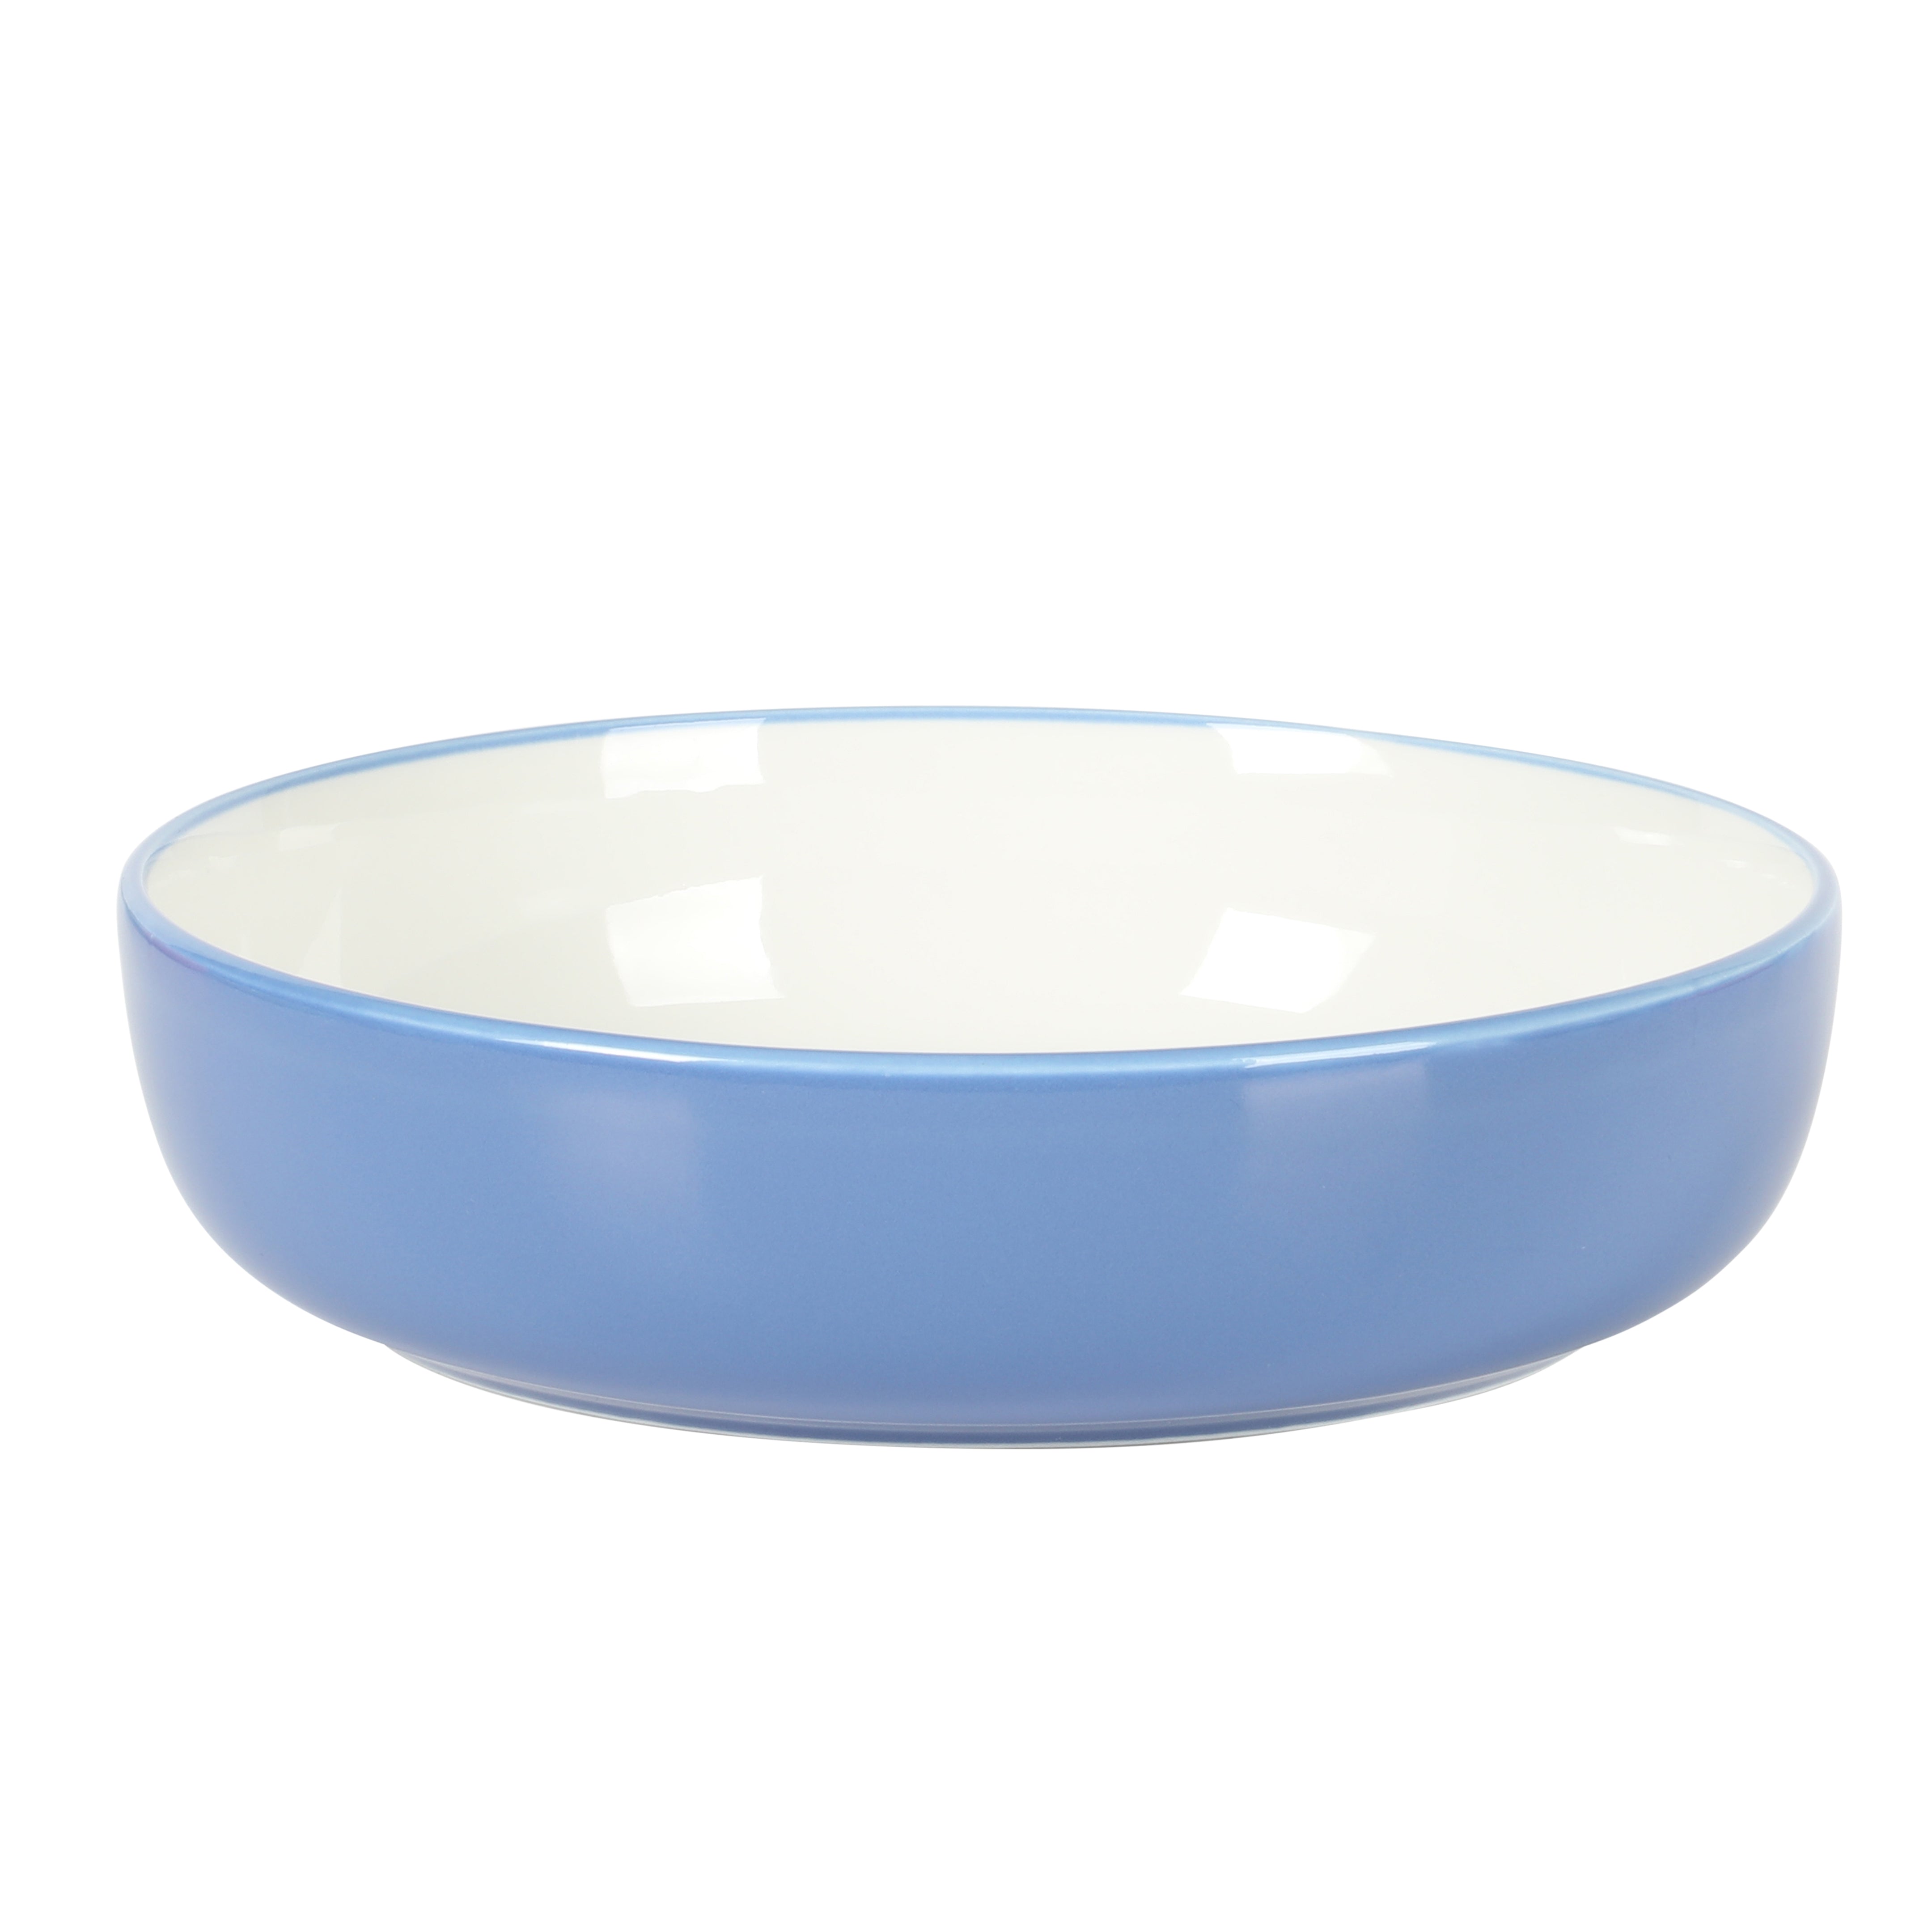 Sur La Table Kitchen Essentials 16-Piece Two-Tone Porcelain Dinnerware Plates and Bowls Set